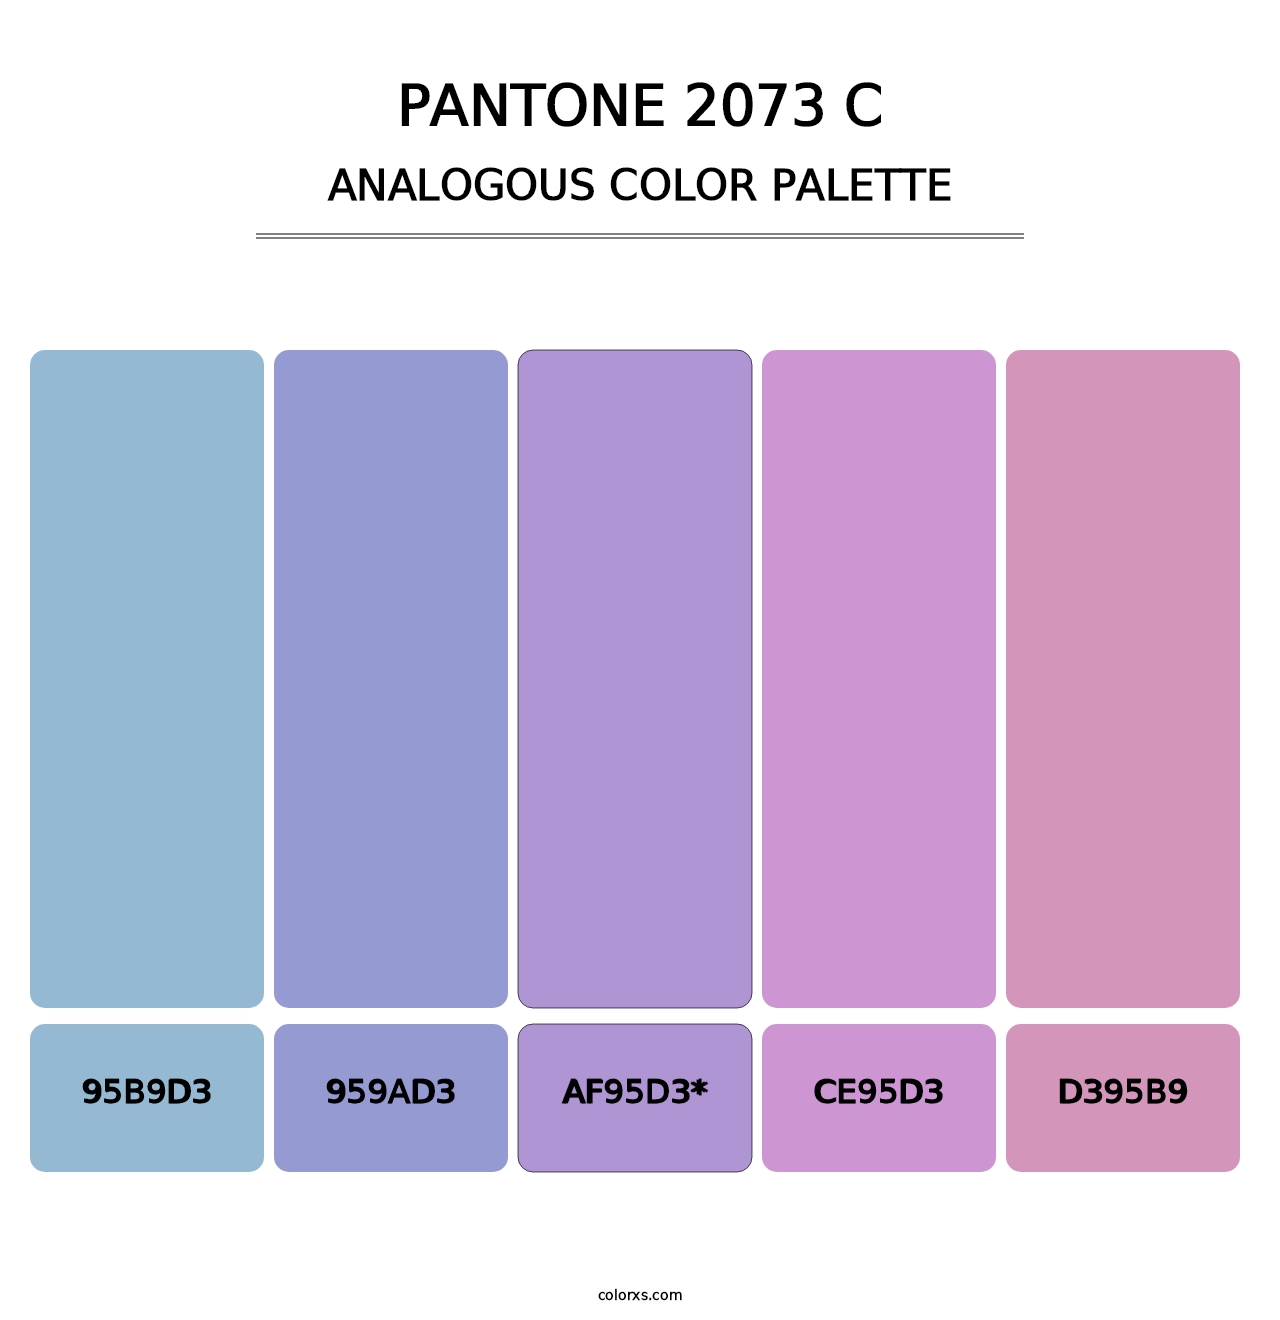 PANTONE 2073 C - Analogous Color Palette